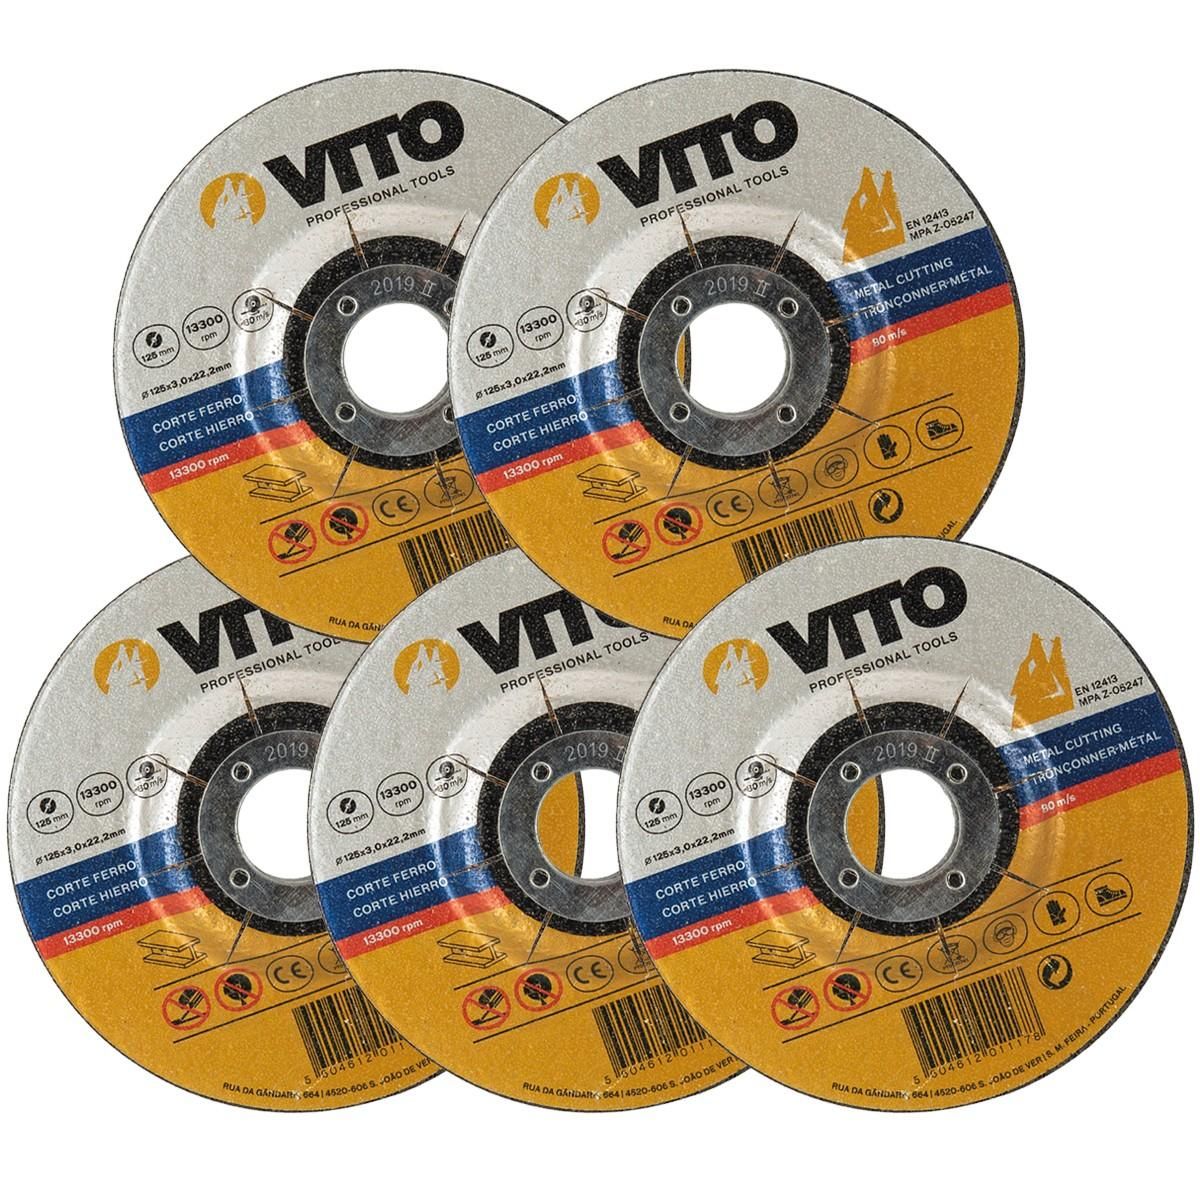 VITO Pro-Power Lot de 5 disques à tronçonner 125mm VITO METAL Alésage 22,2mm Usage intensif